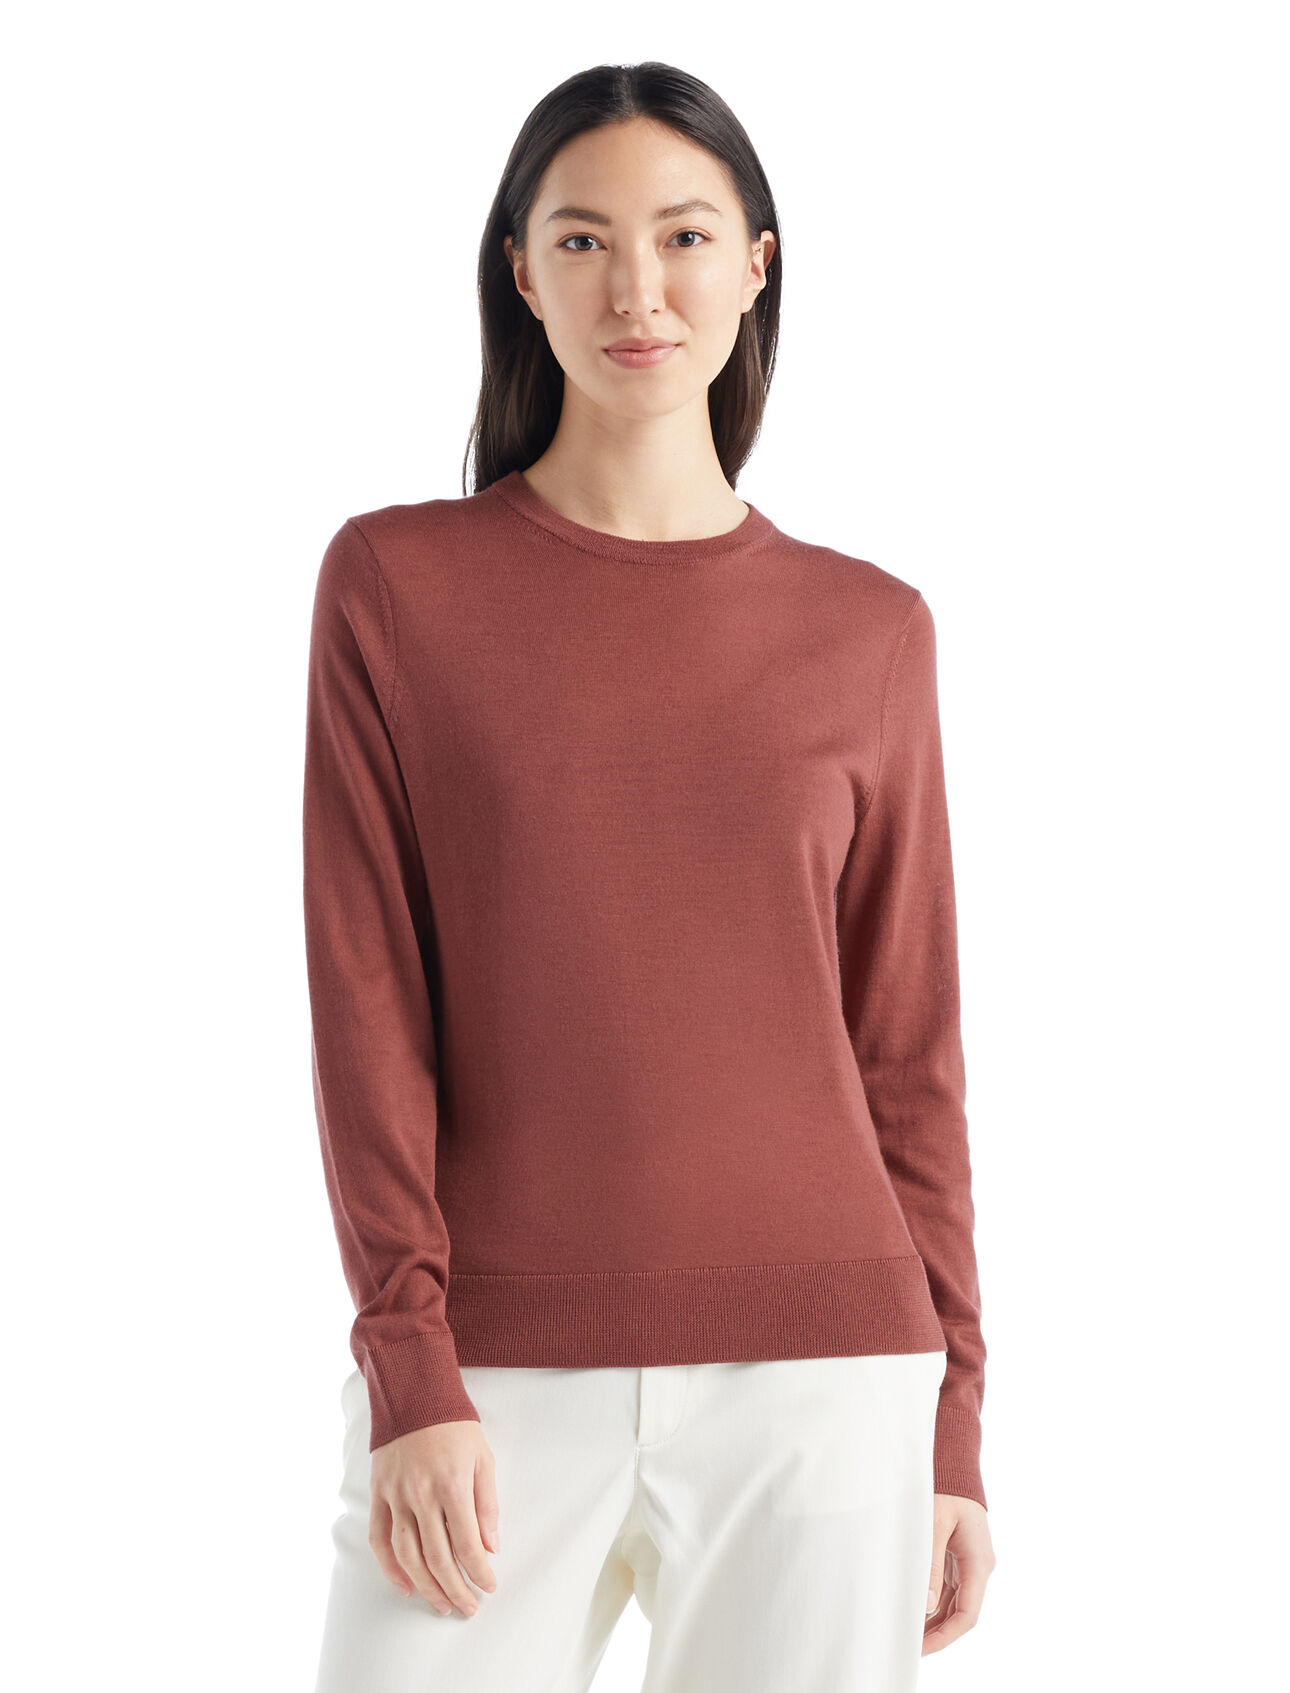 dla kobiet Sweter Wilcox z długim rękawem z wełny merino  Klasyczny sweter na co dzień wykonany z niezwykle cienkiej wełny merino, która zapewnia niezrównaną miękkość. Sweter Wilcox z długim rękawem doskonale sprawdzi się w dni, kiedy potrzebujesz lekkiej dodatkowej warstwy.